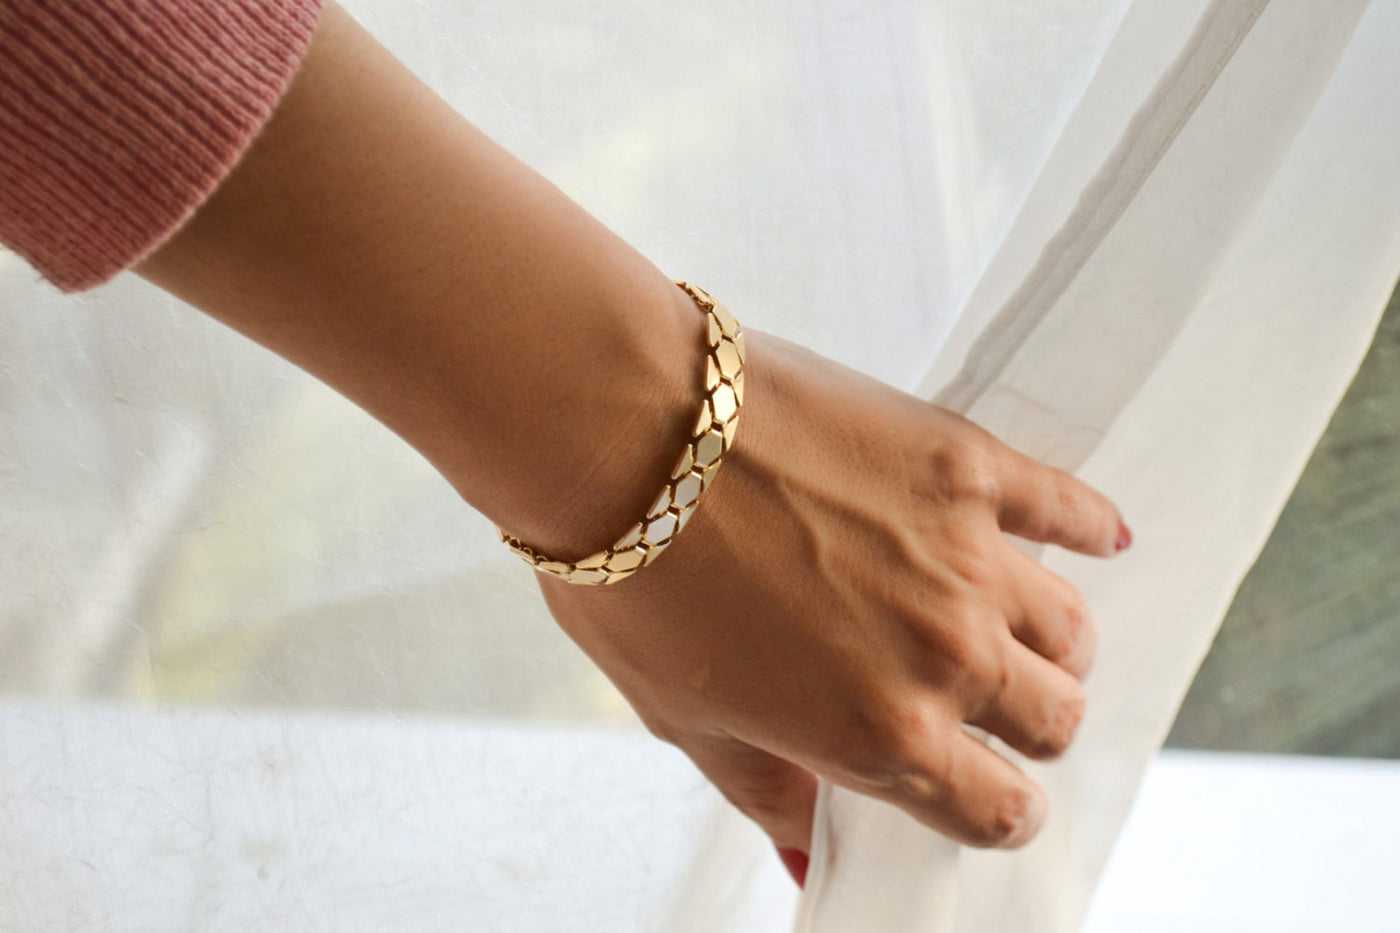 Chunky gold bracelet | Chunky gold bracelet, Gold bracelet, Bracelets